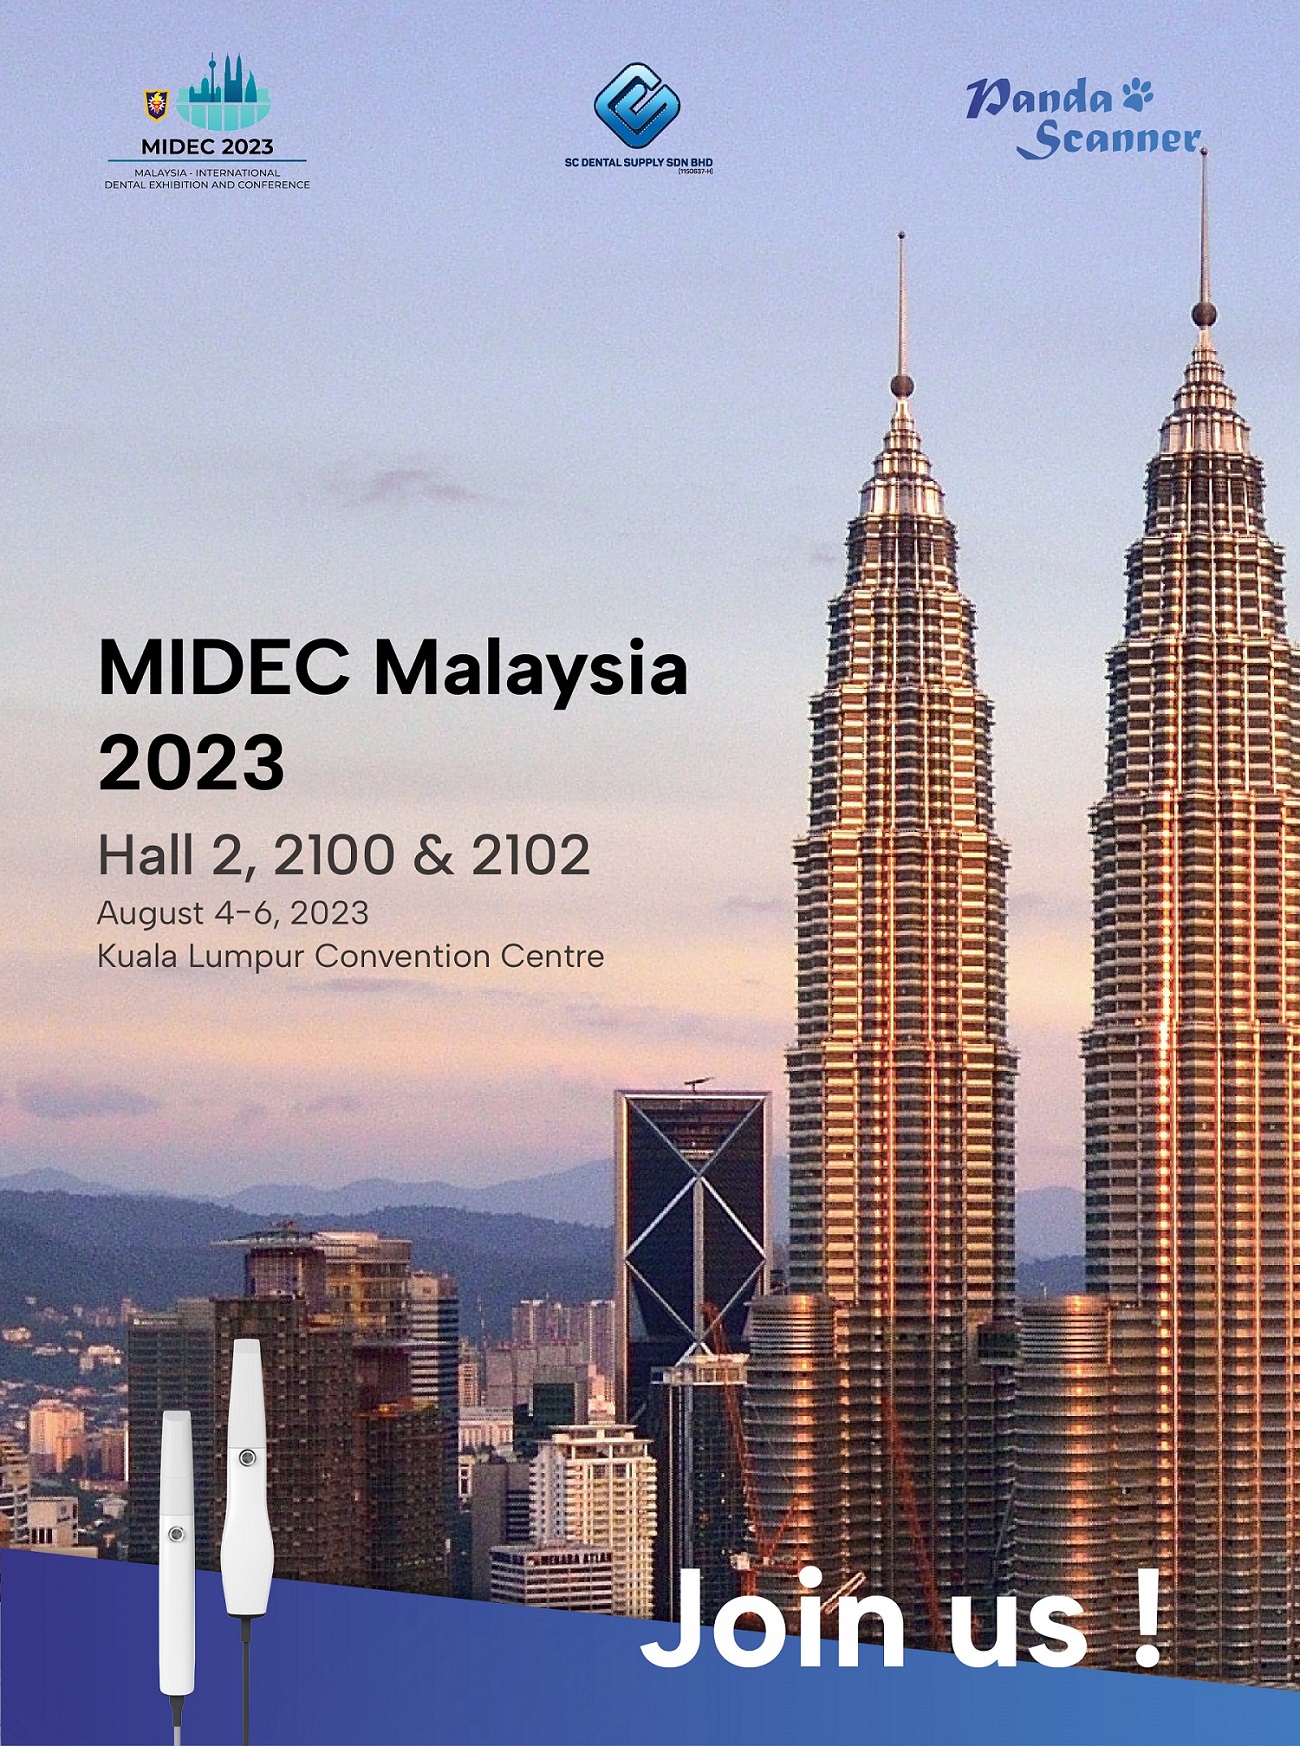 يدعوكم Panda Scanner للمشاركة في MIDEC Malaysia 2023